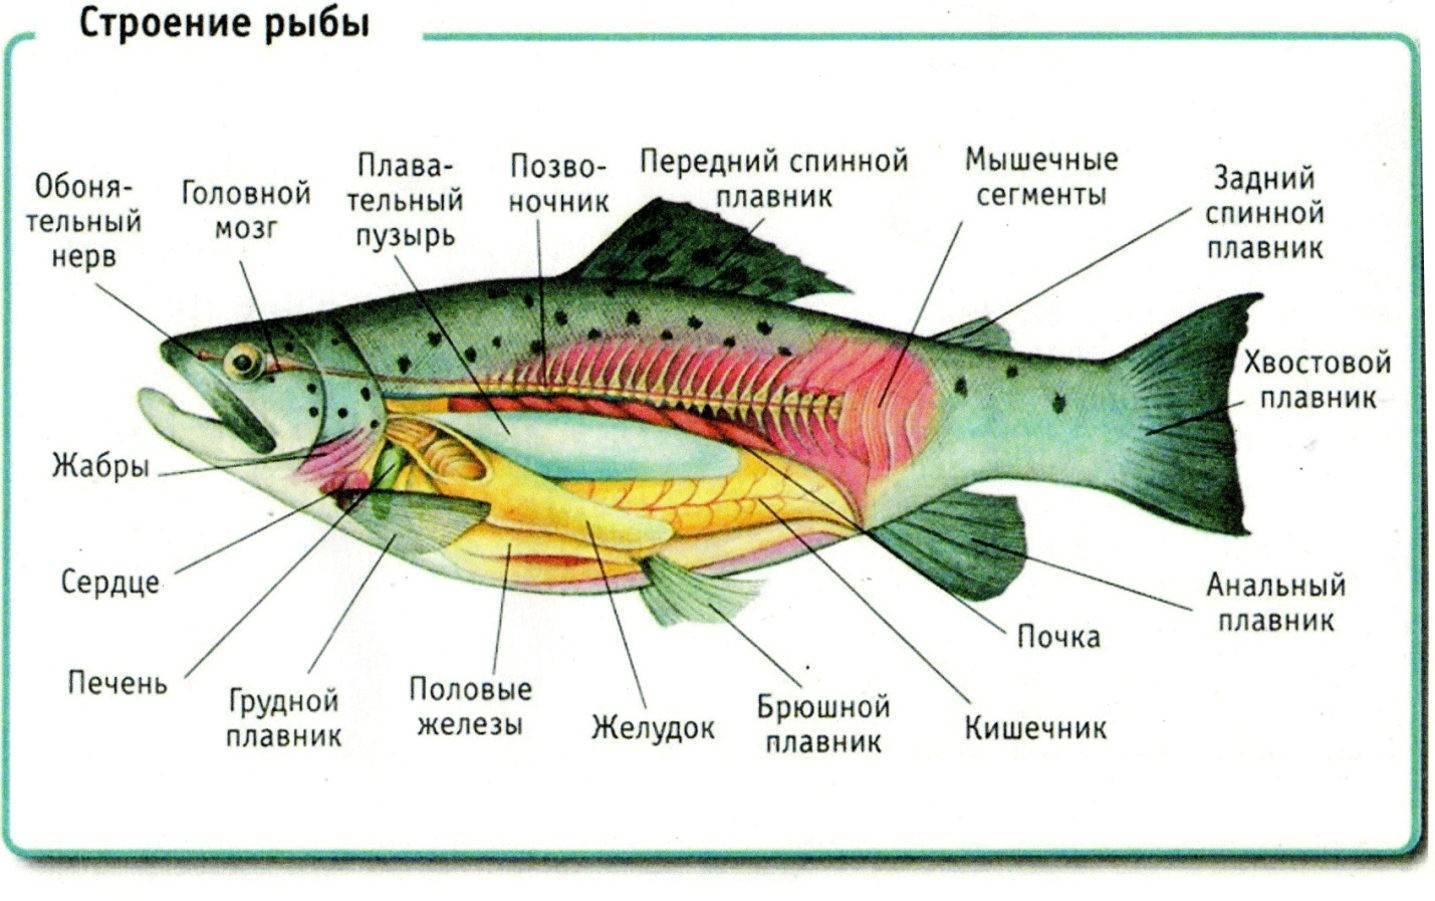 Анисимова и.м., лавровский в.в. ихтиология. основные звенья жизненного цикла рыб. питание и упитанность рыб - электронная биологическая библиотека